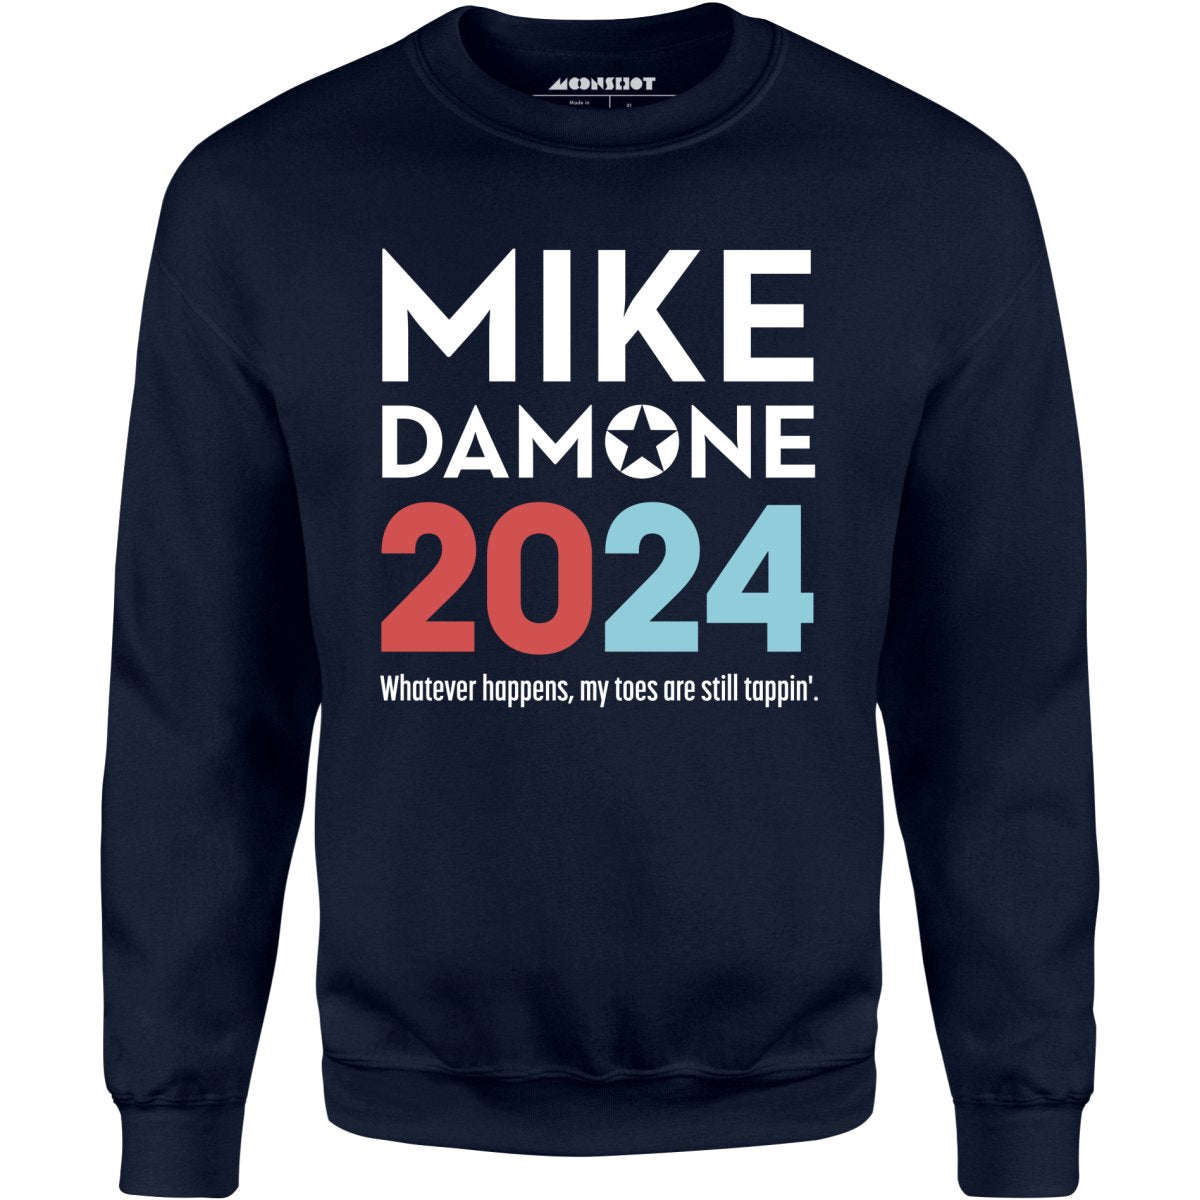 Mike Damone 2024 - Unisex Sweatshirt